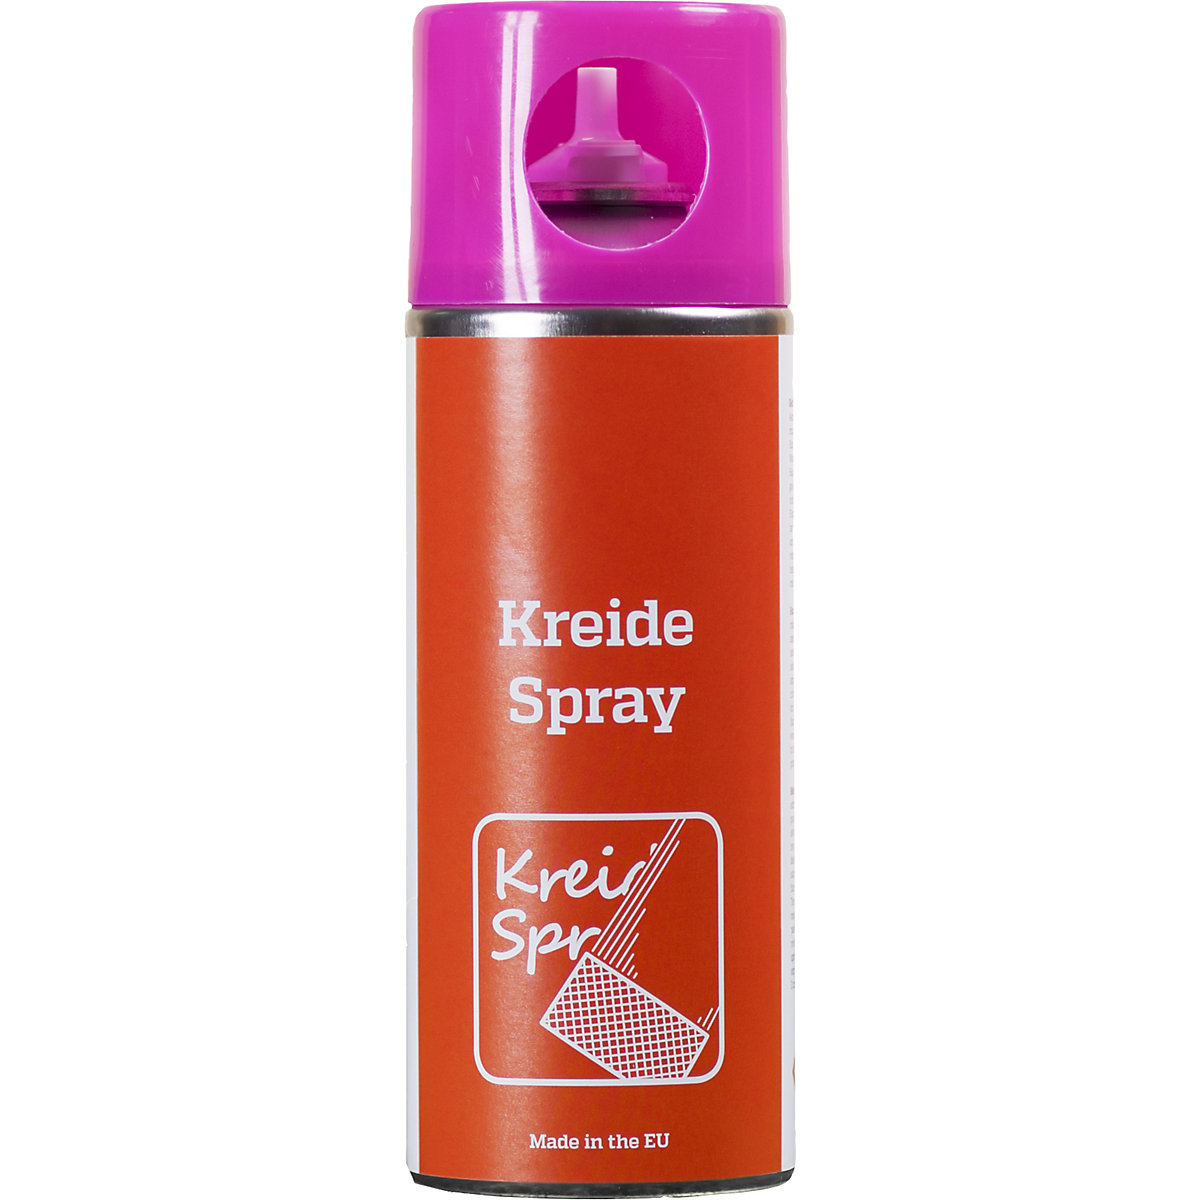 Kreidespray, Inhalt 400 ml, VE 6 Stk, pink-1